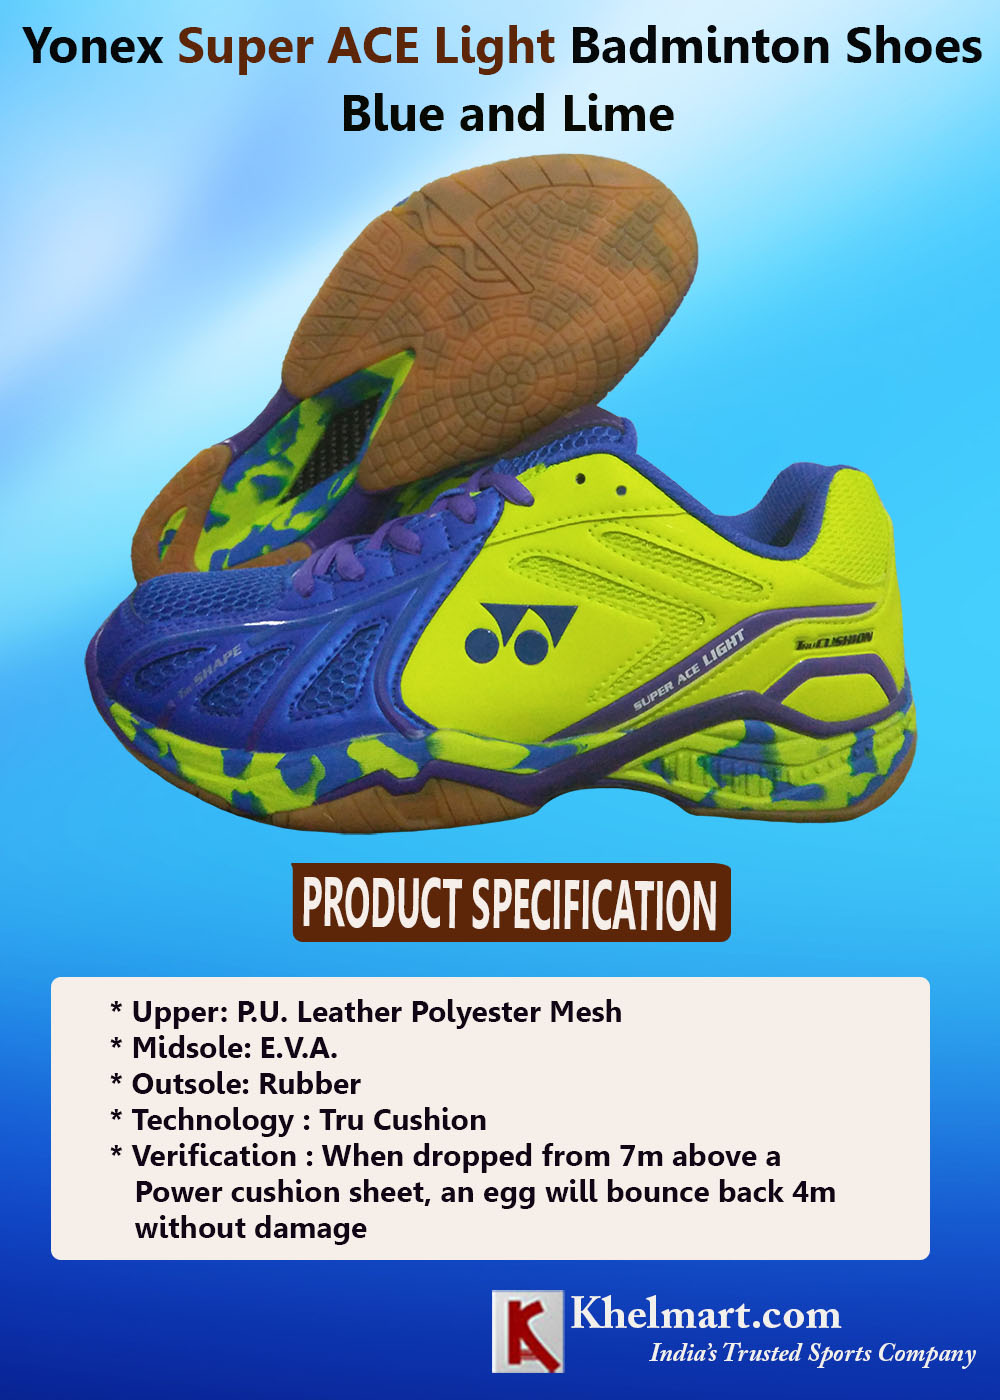 Yonex-Super-ACE-Light-Badminton-Shoes-Blue-and-Lime.jpg